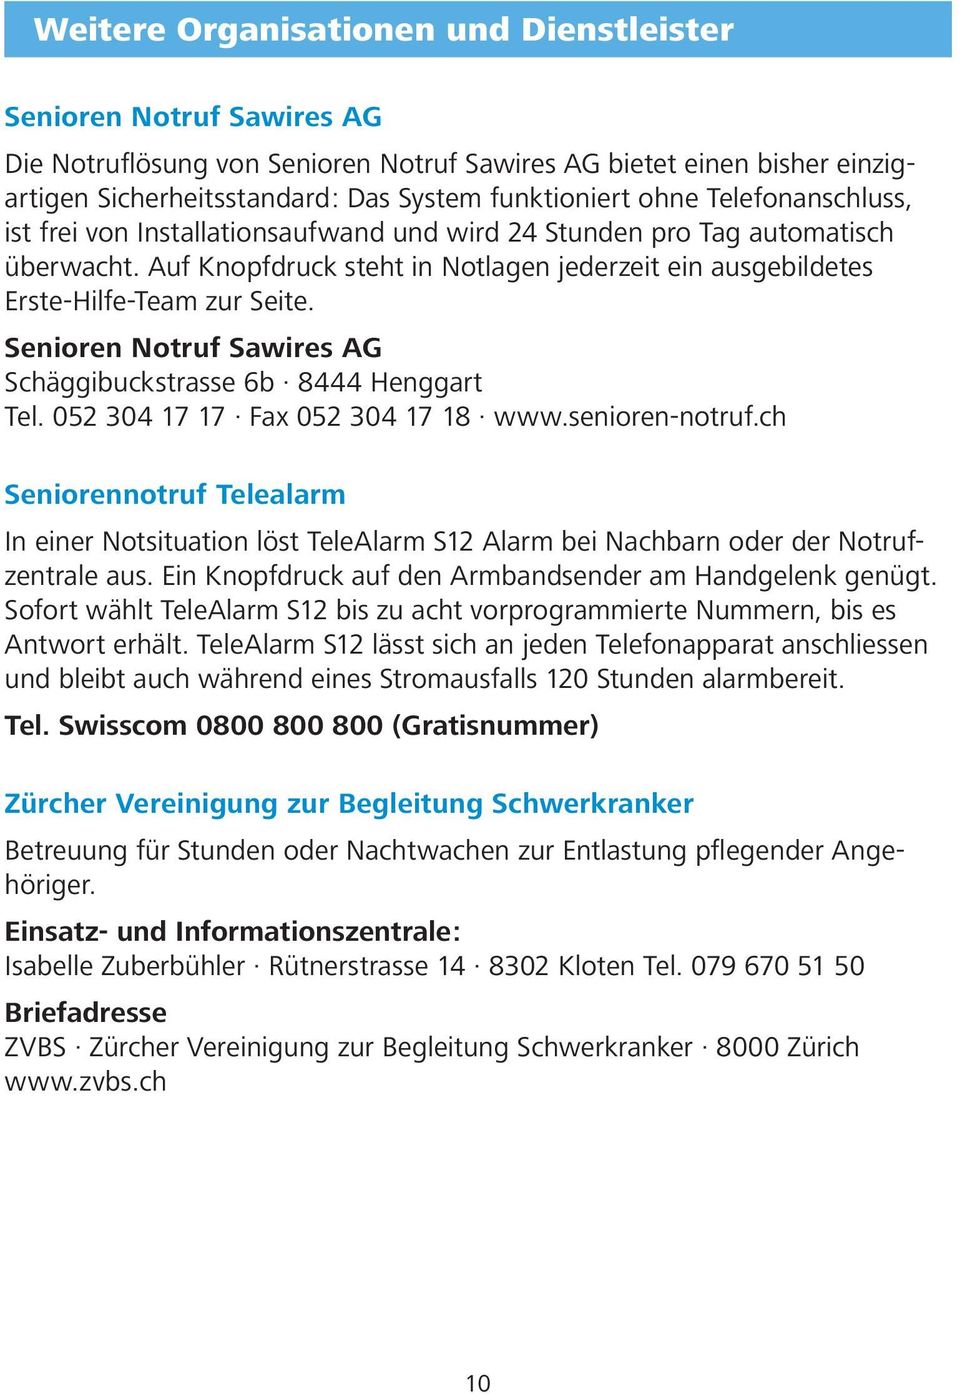 Senioren Notruf Sawires AG Schäggibuckstrasse 6b 8444 Henggart Tel. 052 304 17 17 Fax 052 304 17 18 www.senioren-notruf.